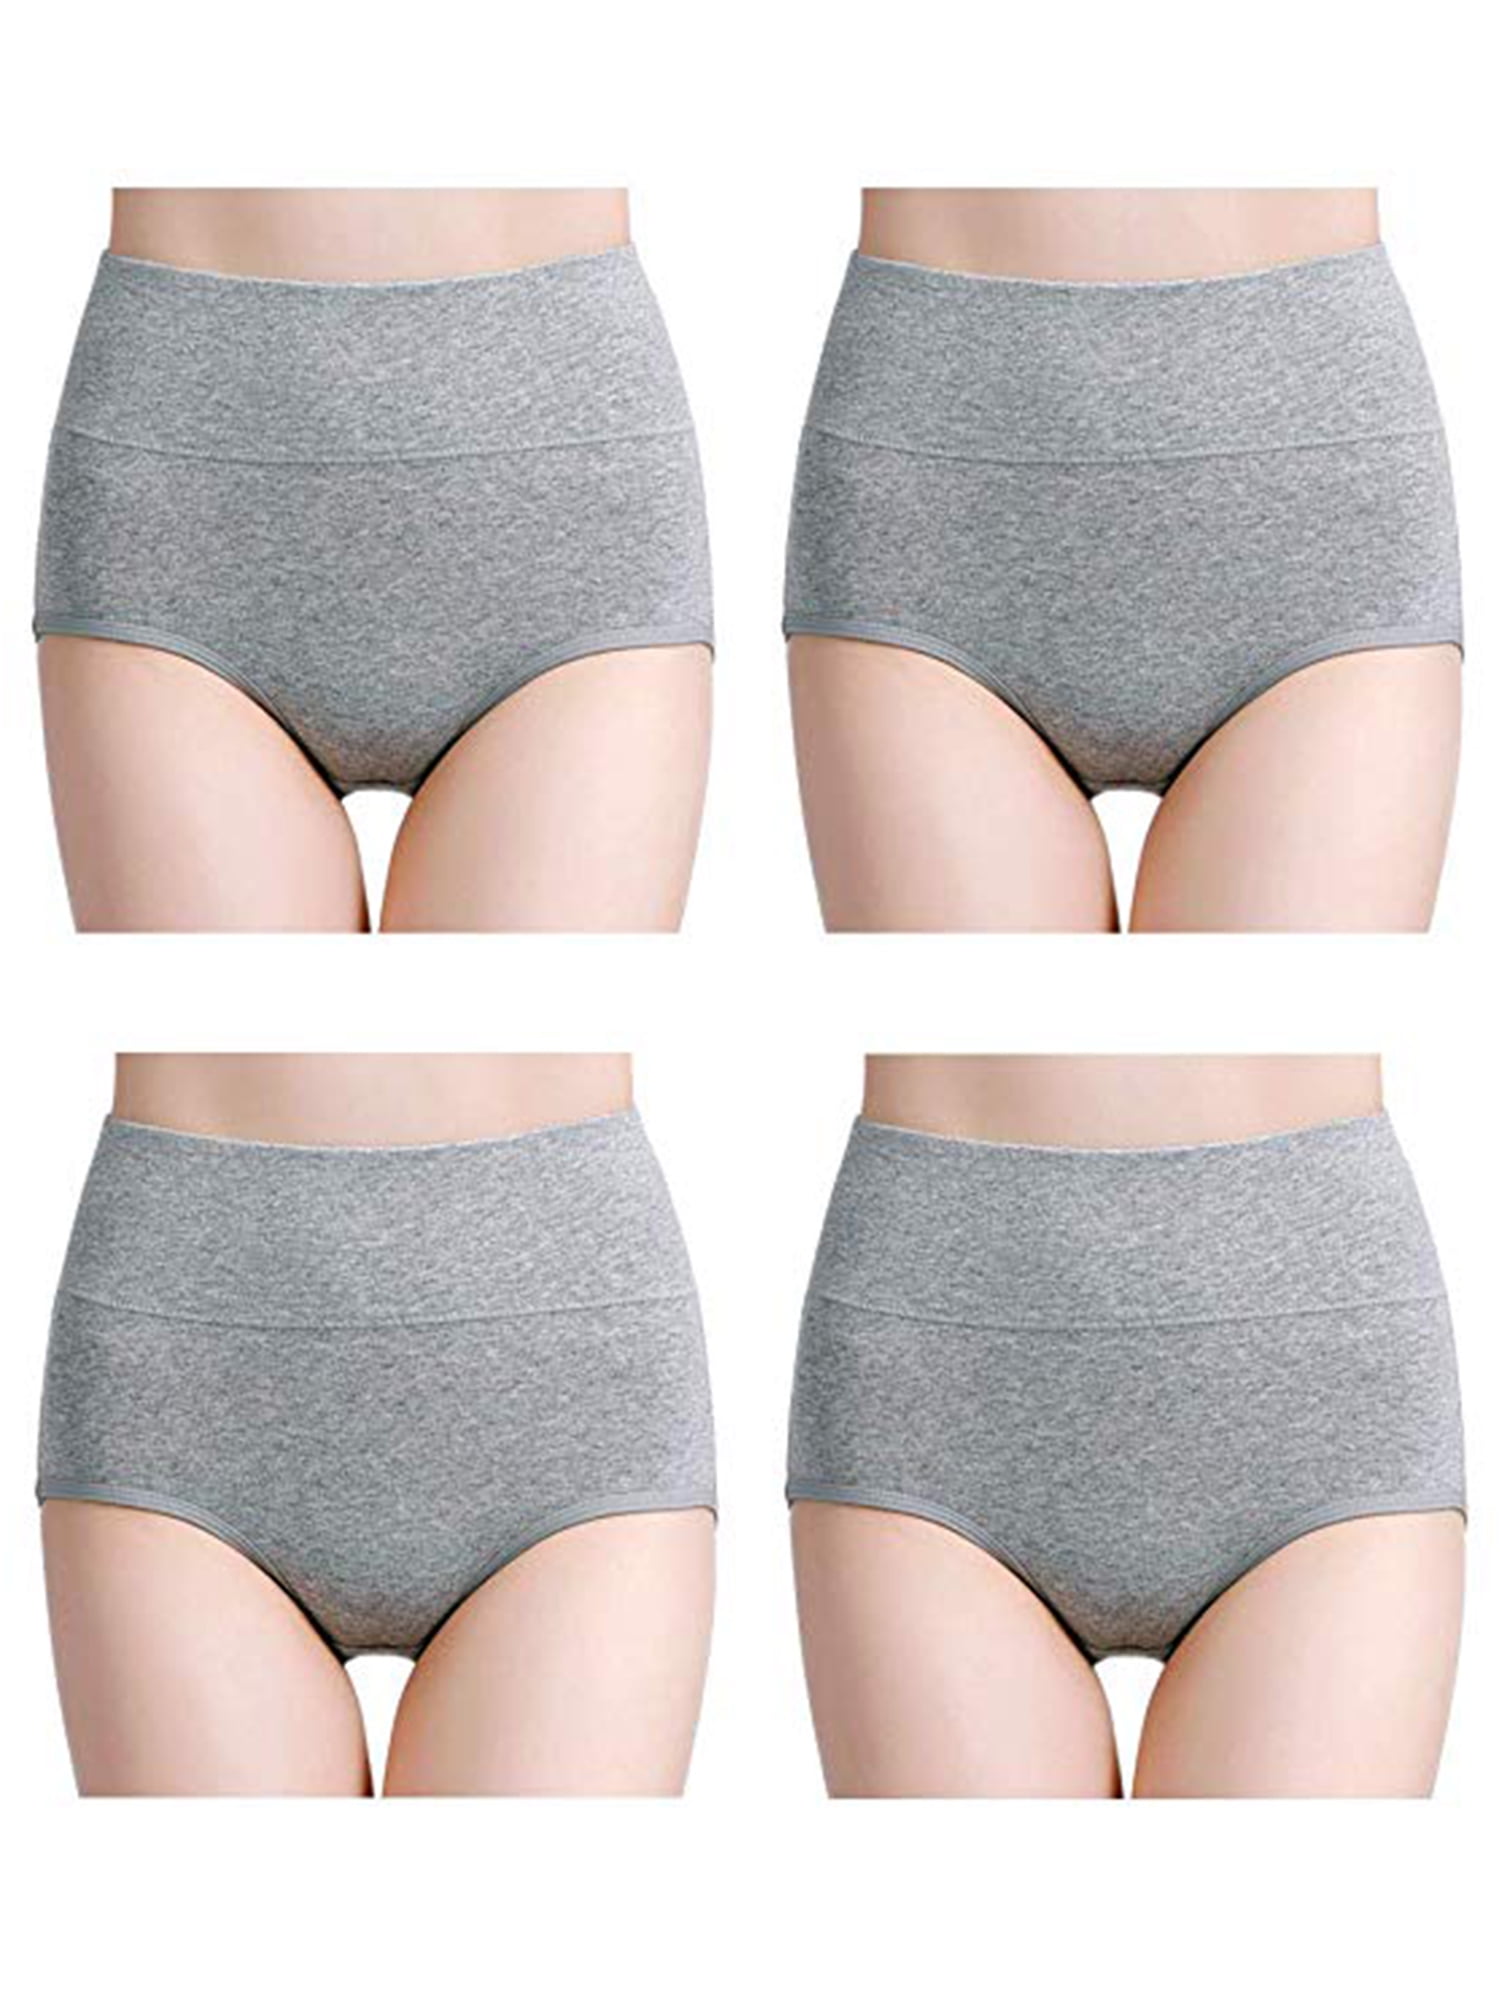 Details about  / Deyllo Women/'s Underwear Cotton Briefs High Waist Breathable Ladies Panties Mult